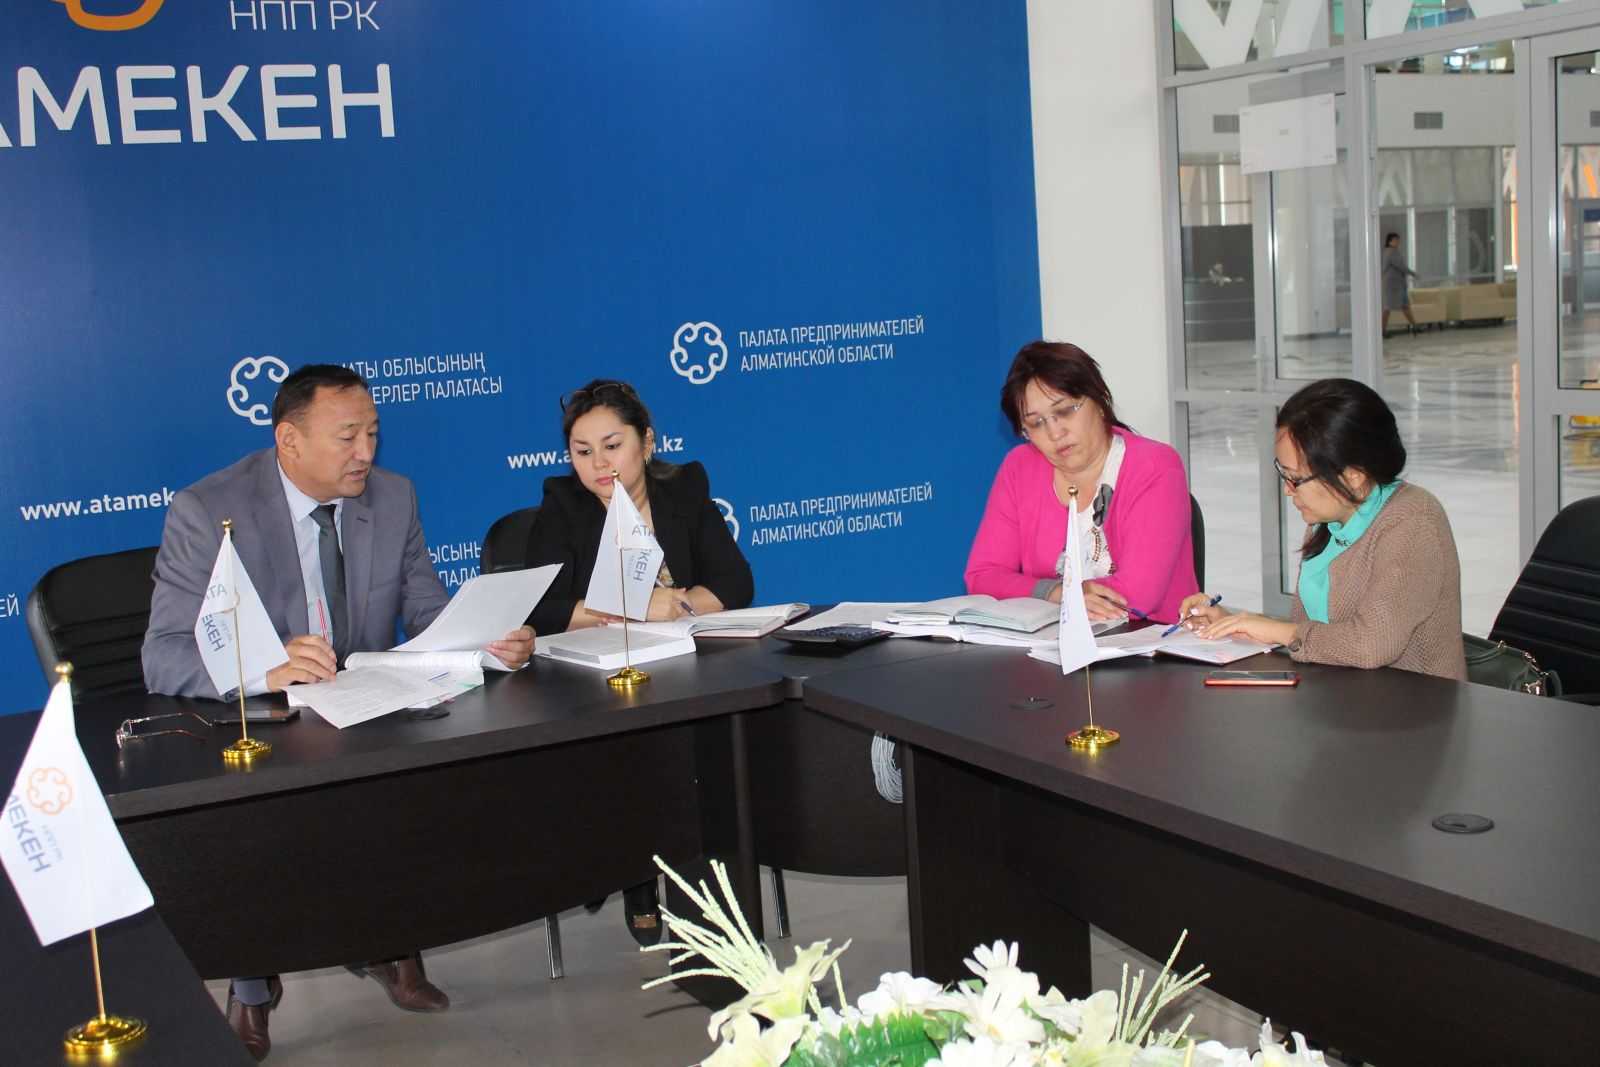 В Алматинской области на 65 млн тенге защищены интересы предпринимателей по налоговым вопросам  